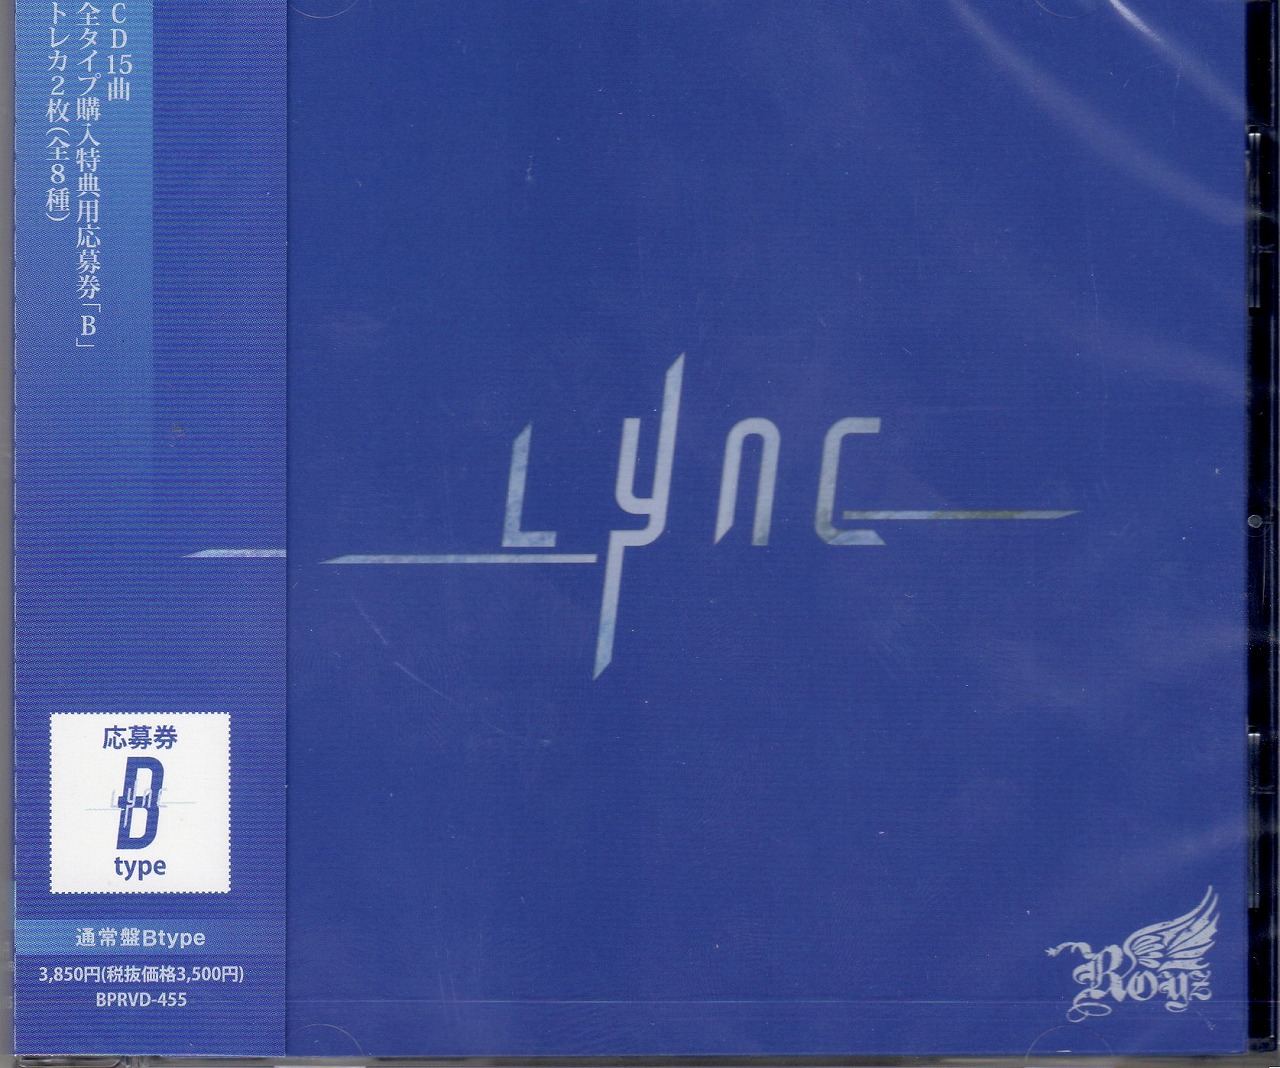 ロイズ の CD 【Btype】Lync